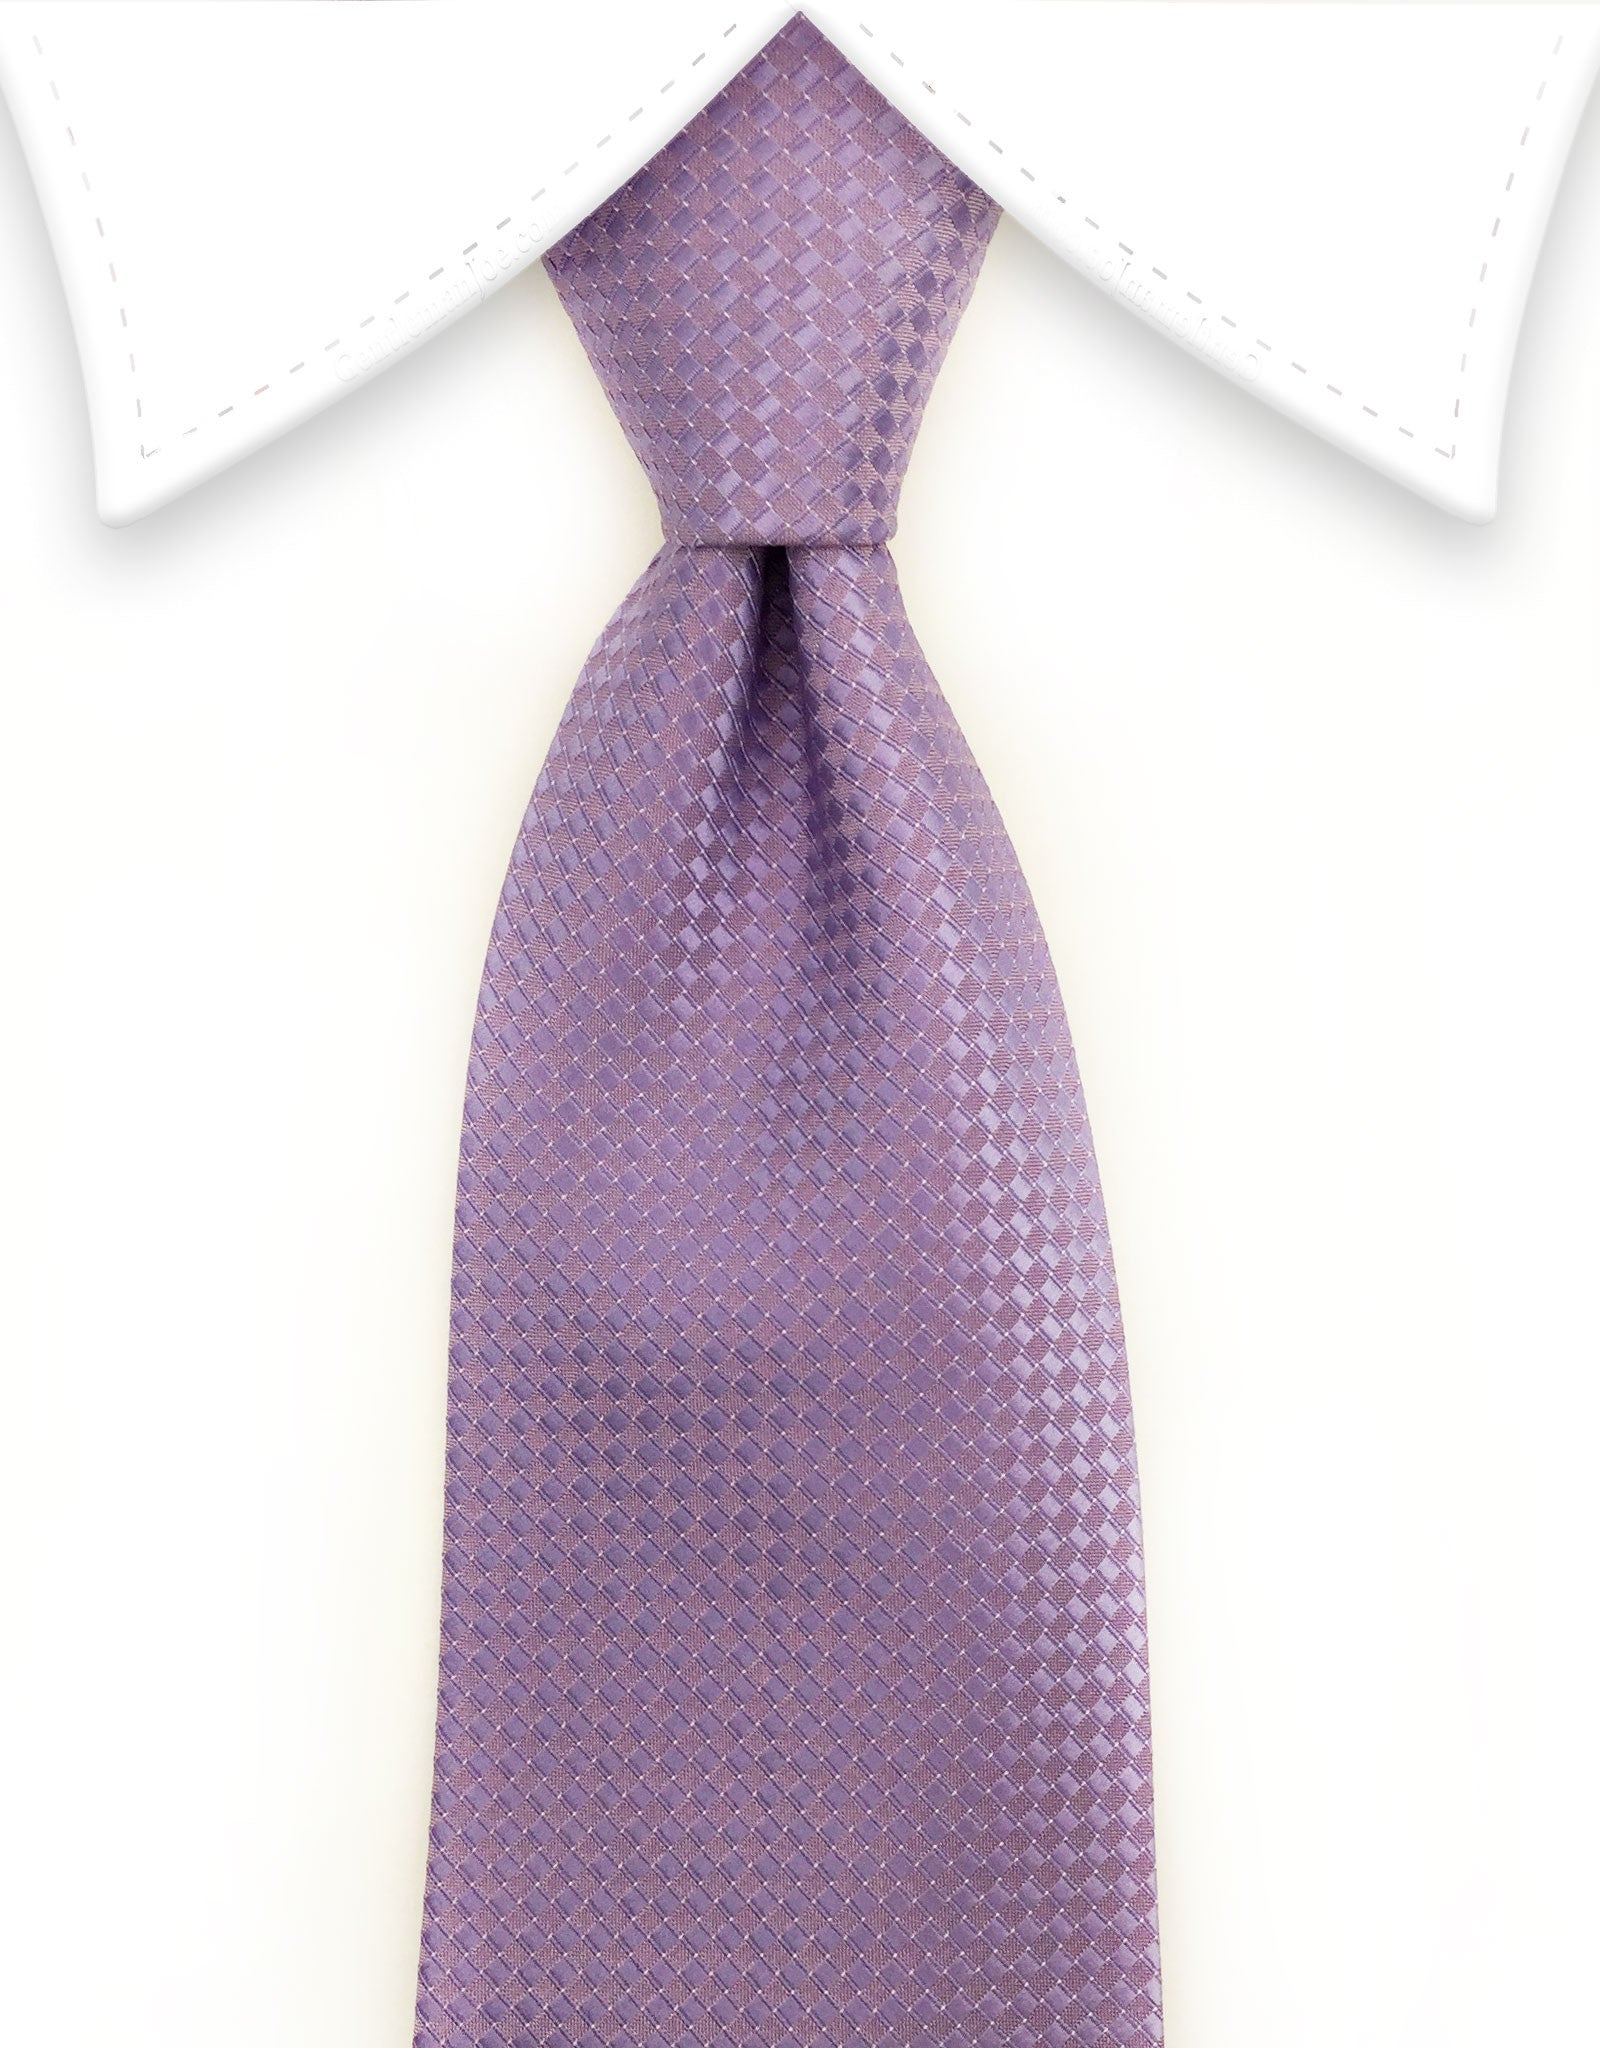 Lilac Tie